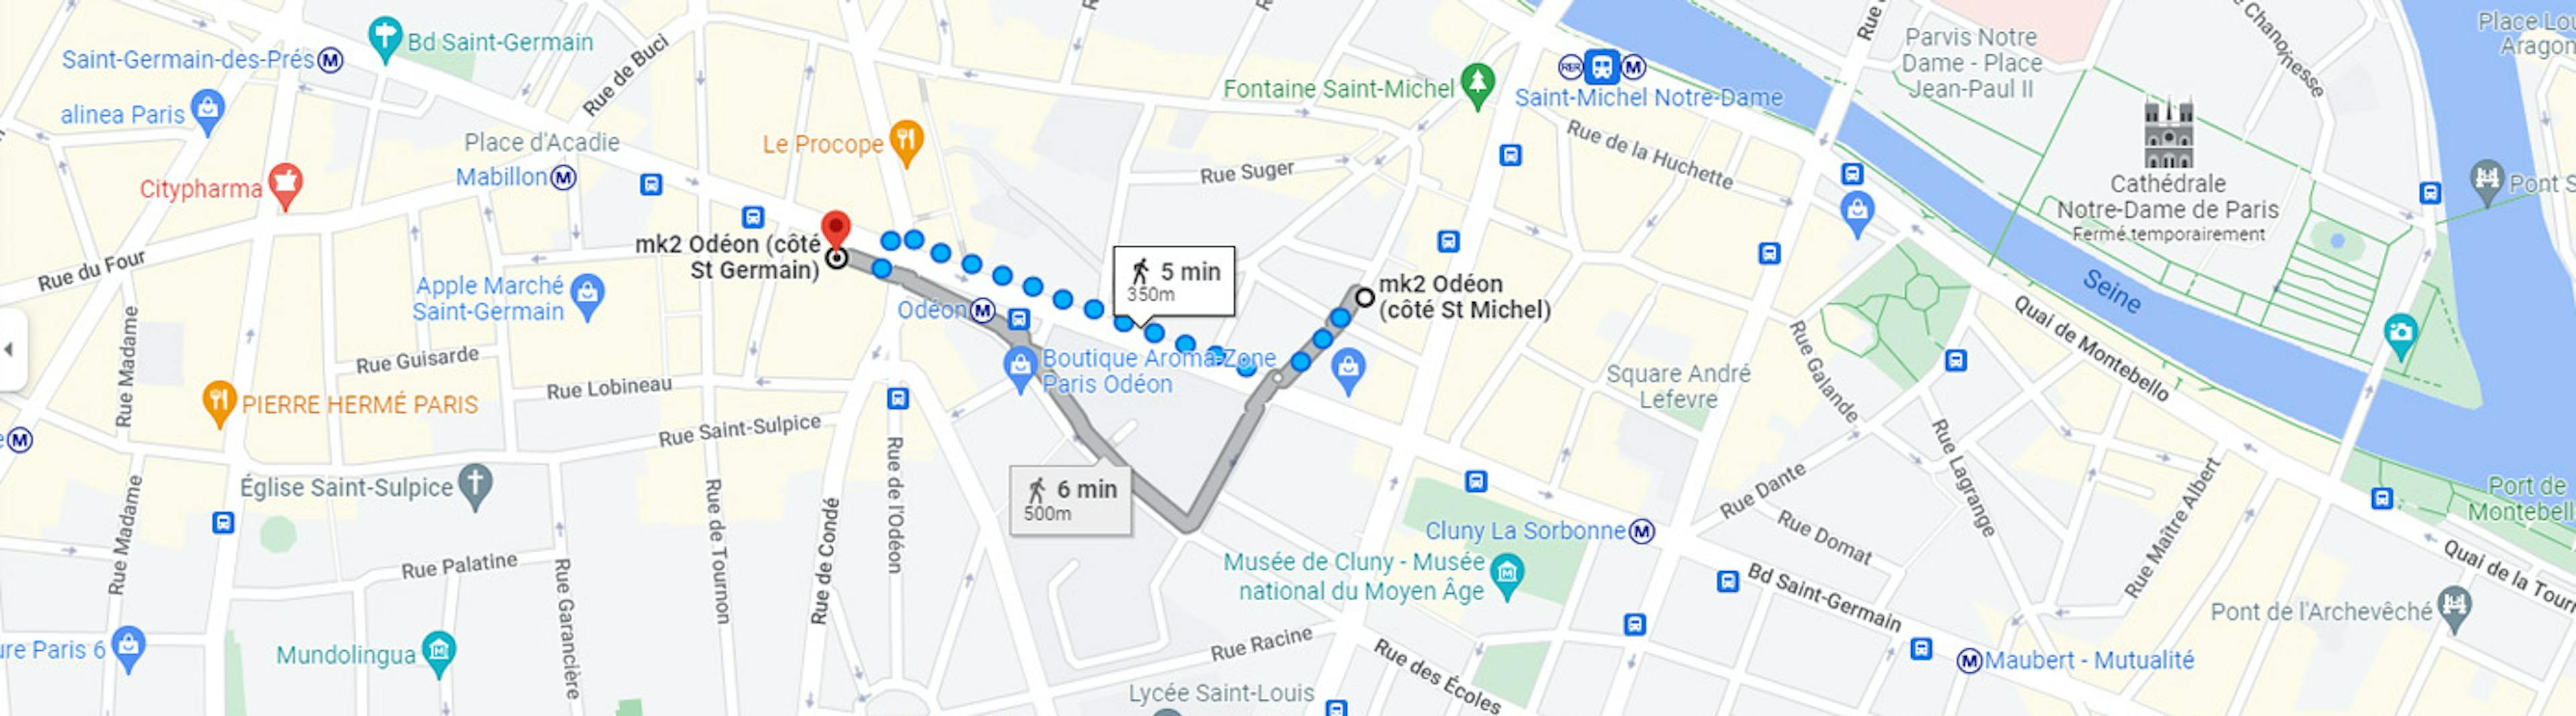 Carte d'accès au complexe de cinéma Odéon (côté St Germain / côté St Michel)